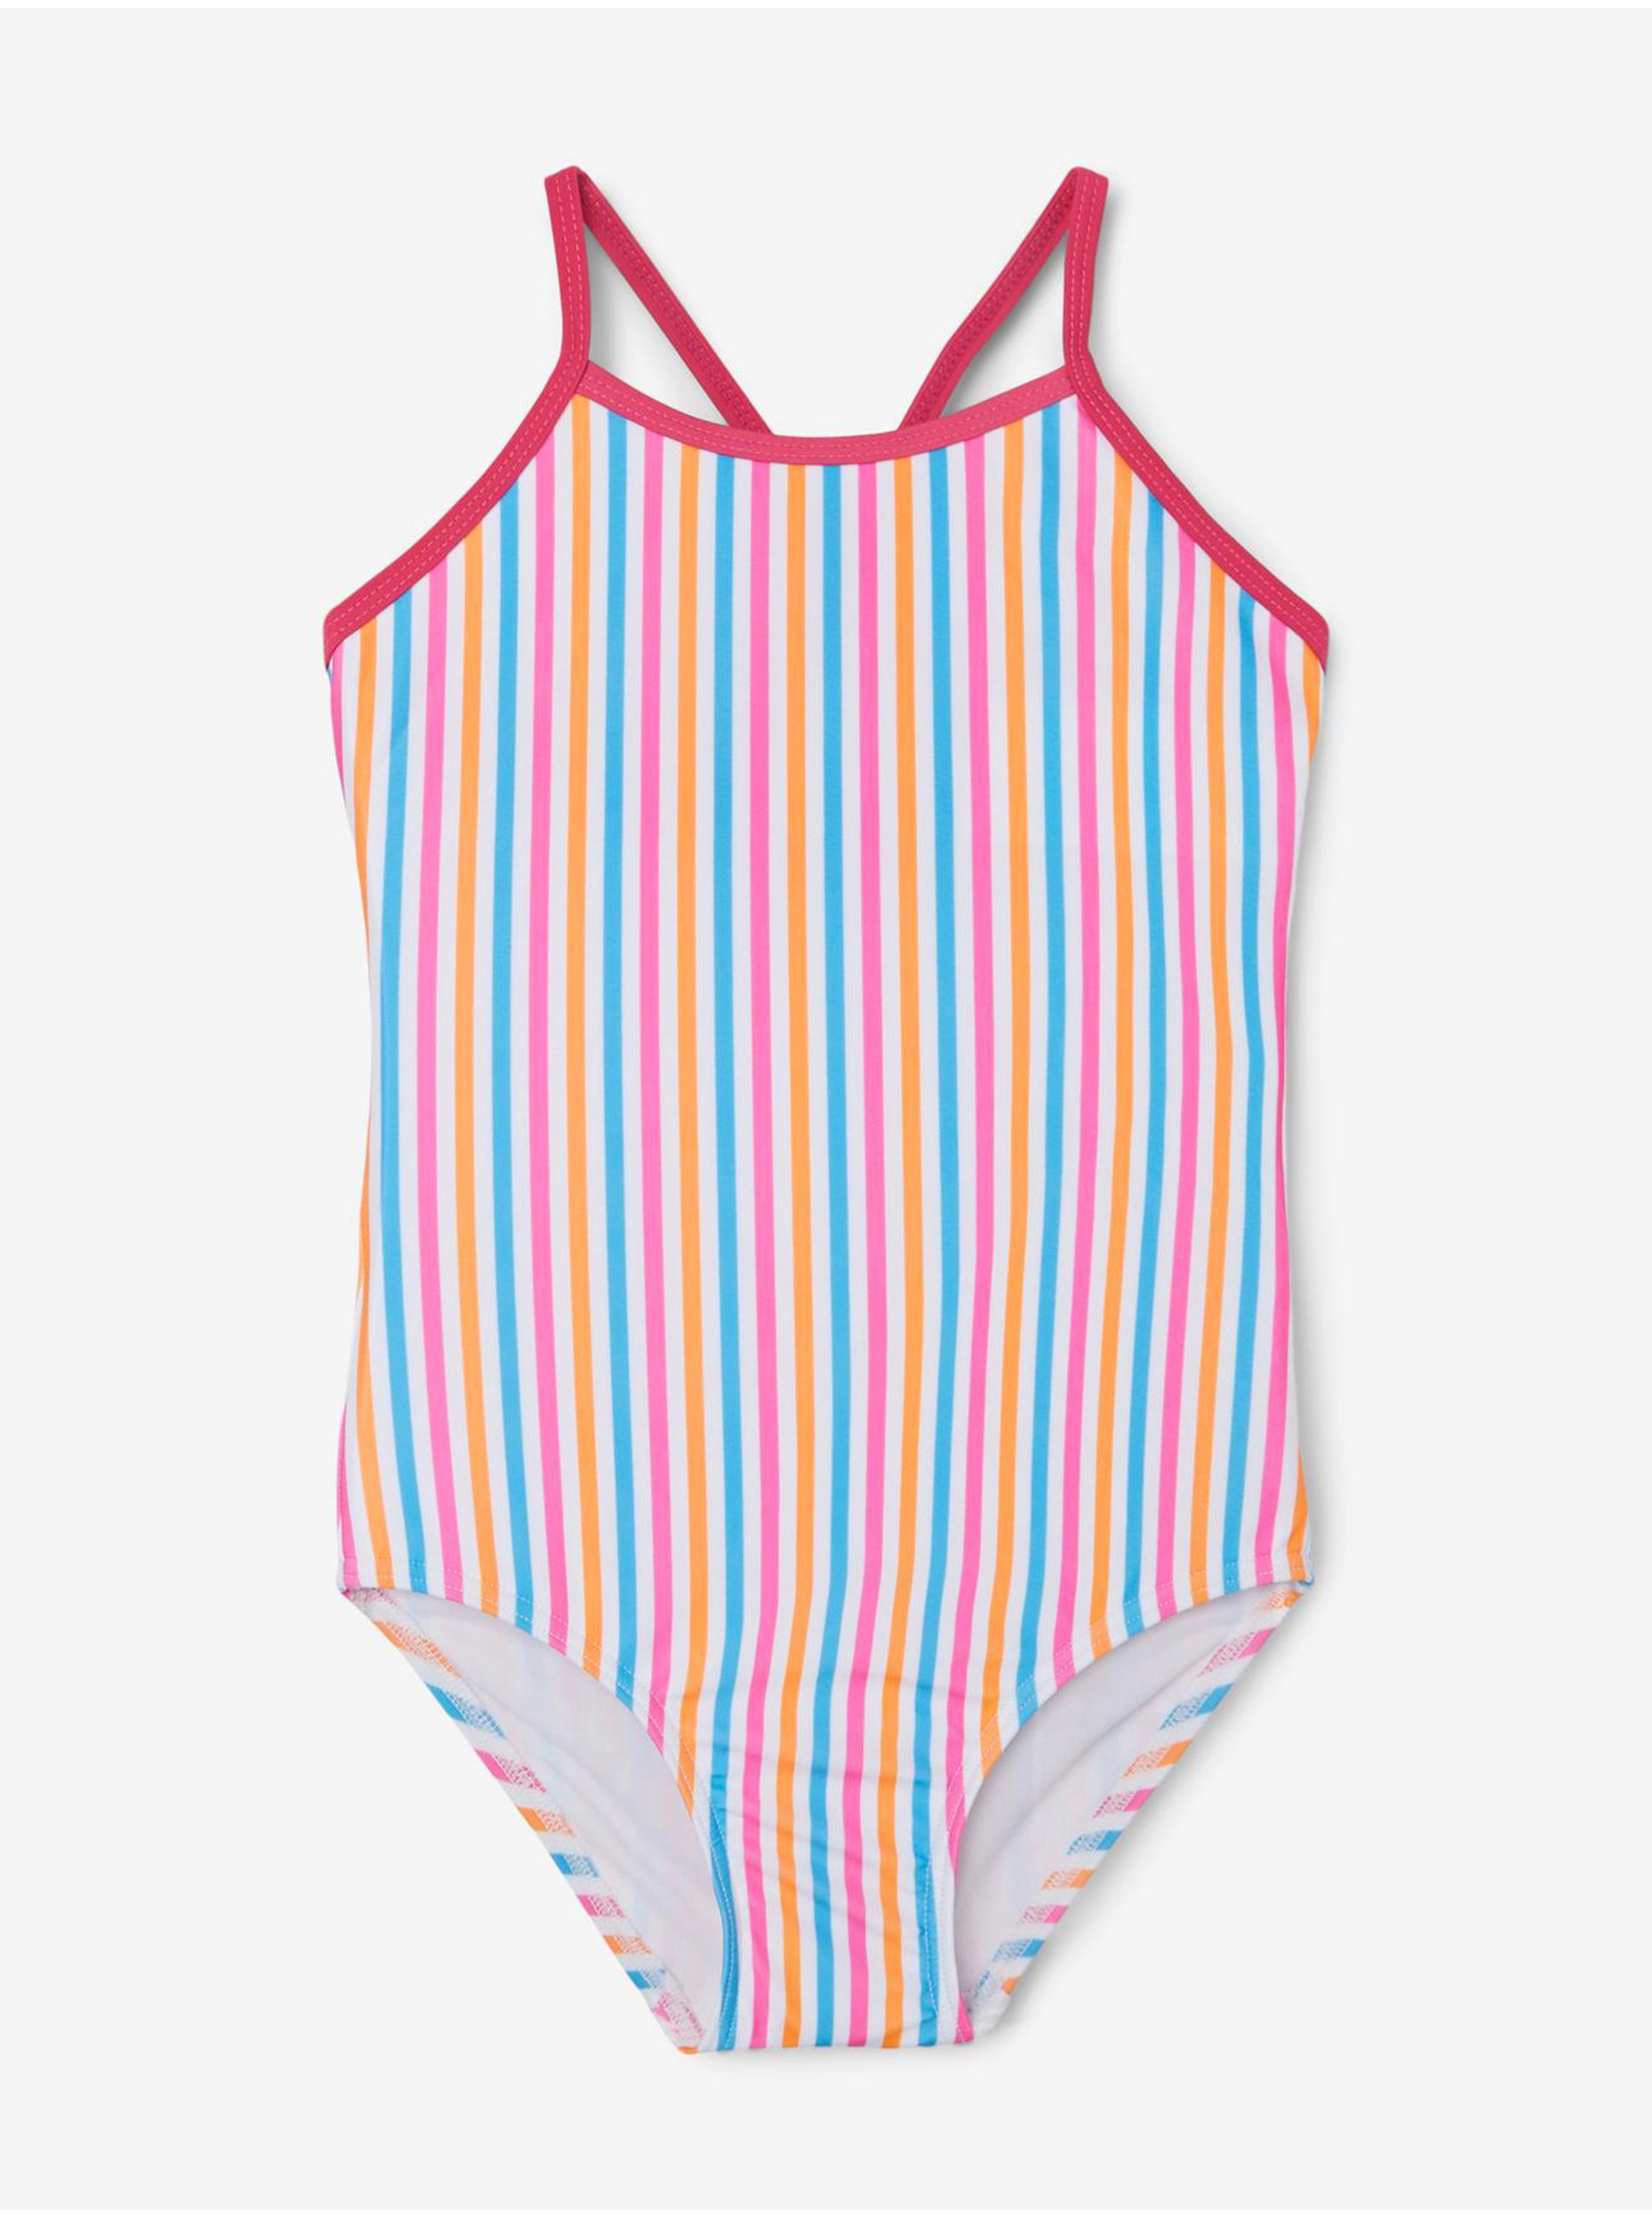 E-shop Bílé holčičí pruhované plavky name it Ziza